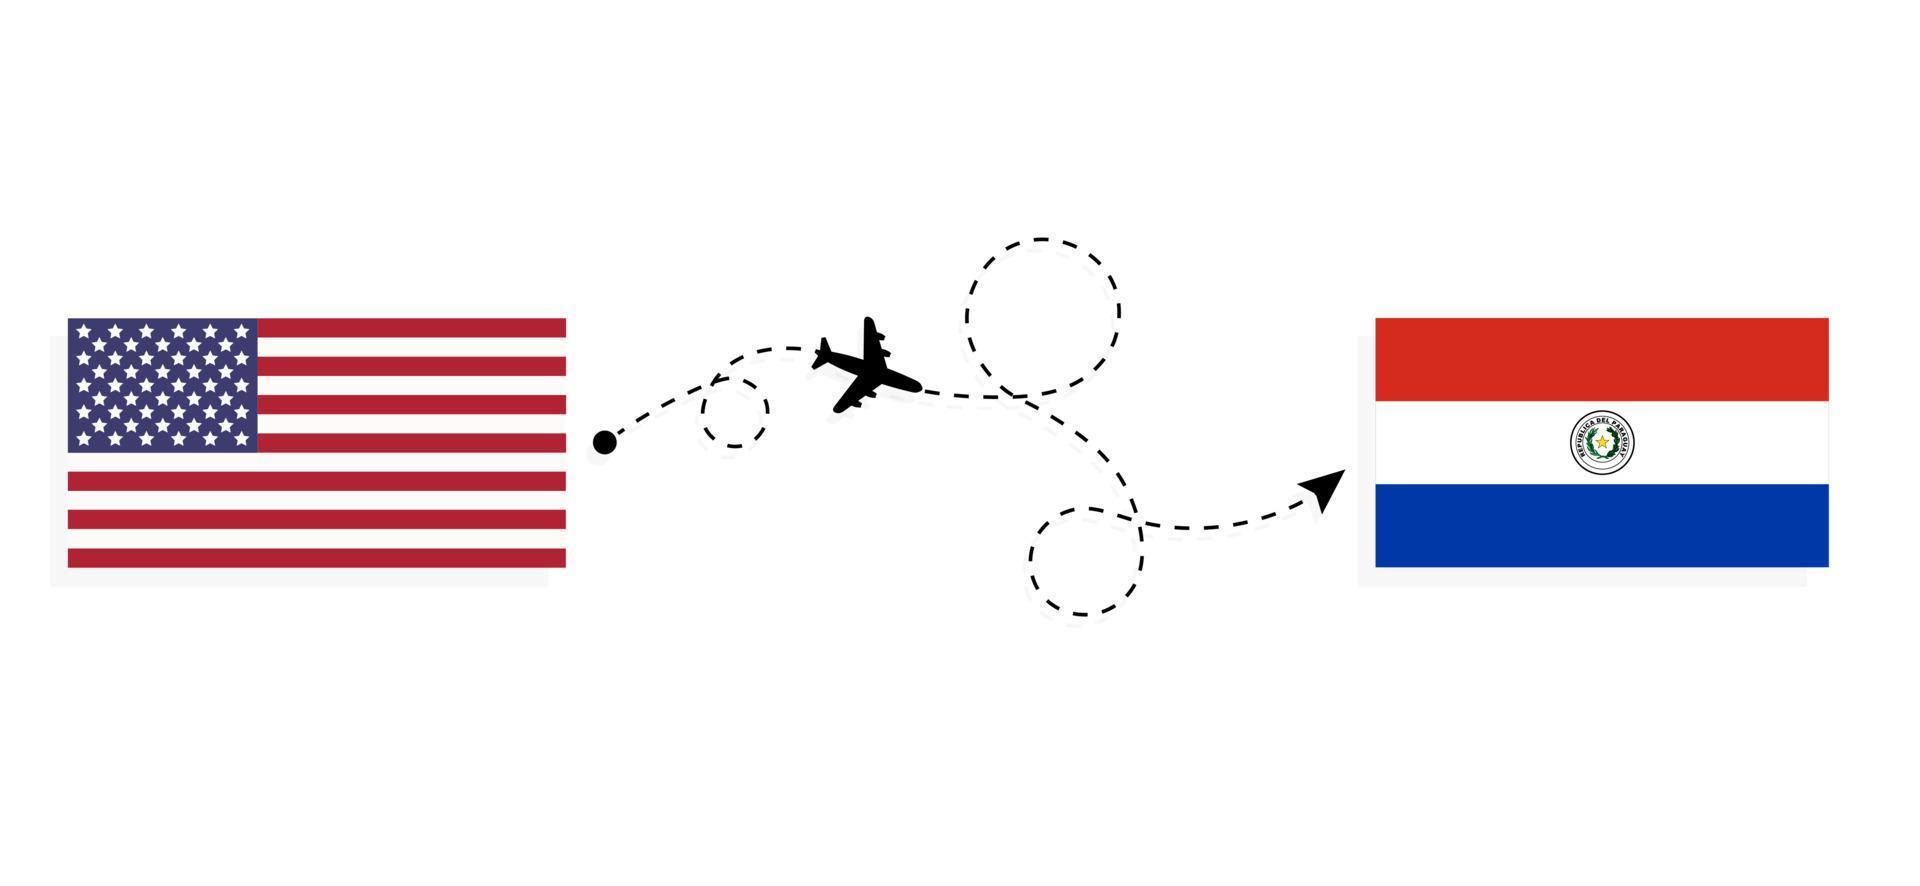 vol et voyage des états-unis au paraguay par concept de voyage en avion de passagers vecteur